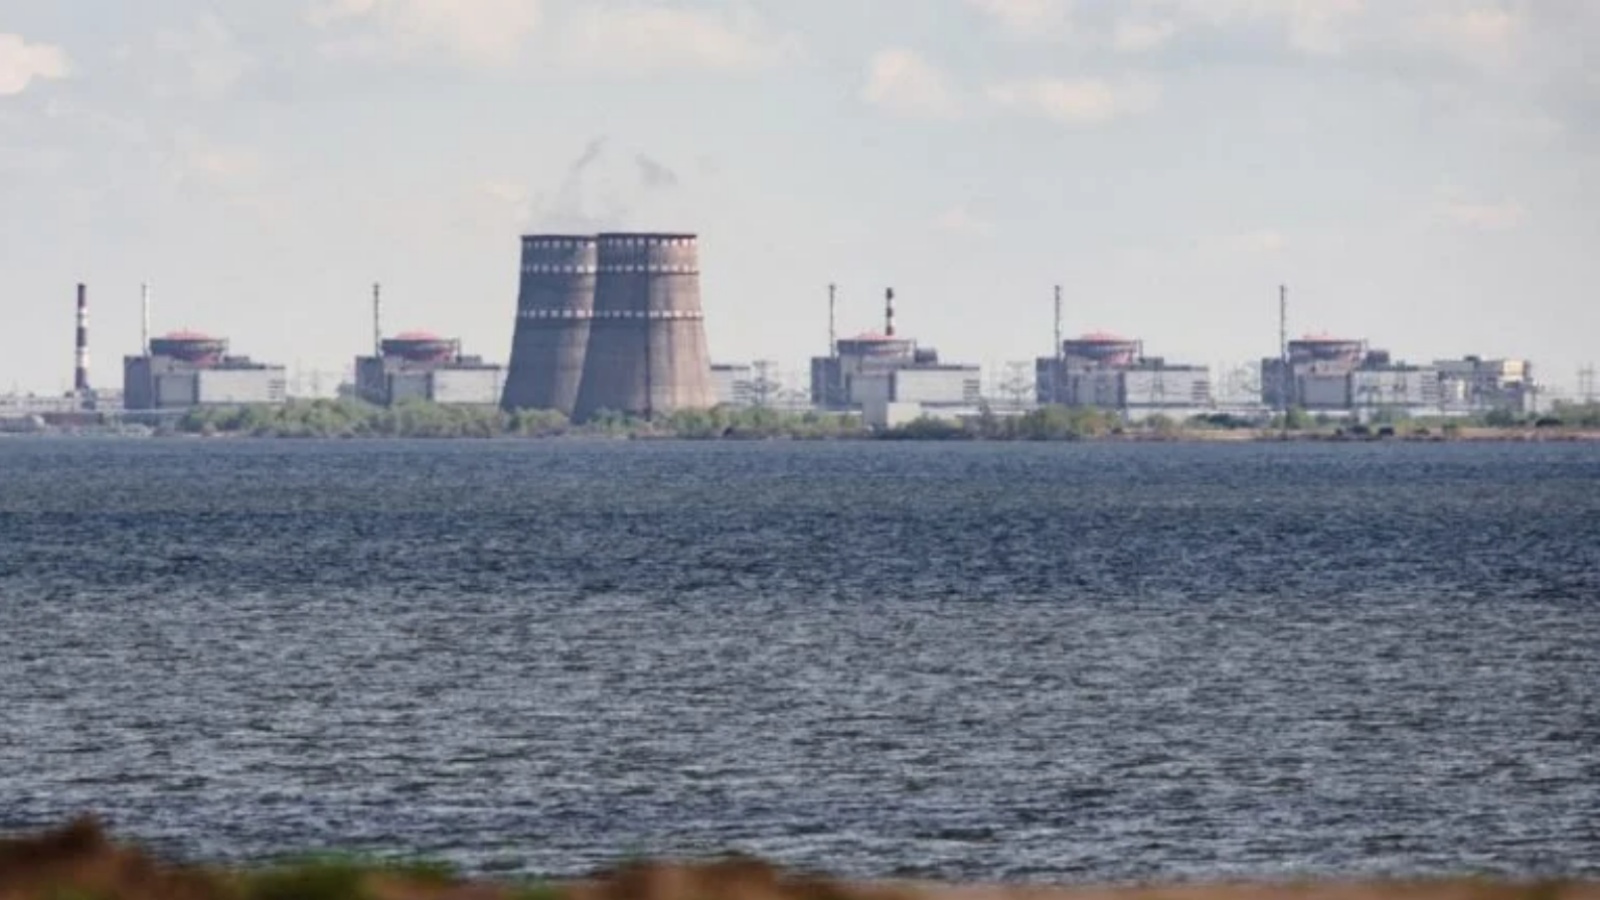 في صورة الملف هذه التي التقطت في 27 أبريل 2022 ، تُظهر منظرًا عامًا لمحطة الطاقة النووية زابوريجيا، الواقعة في منطقة Enerhodar الخاضعة للسيطرة الروسية، والتي شوهدت من نيكوبول